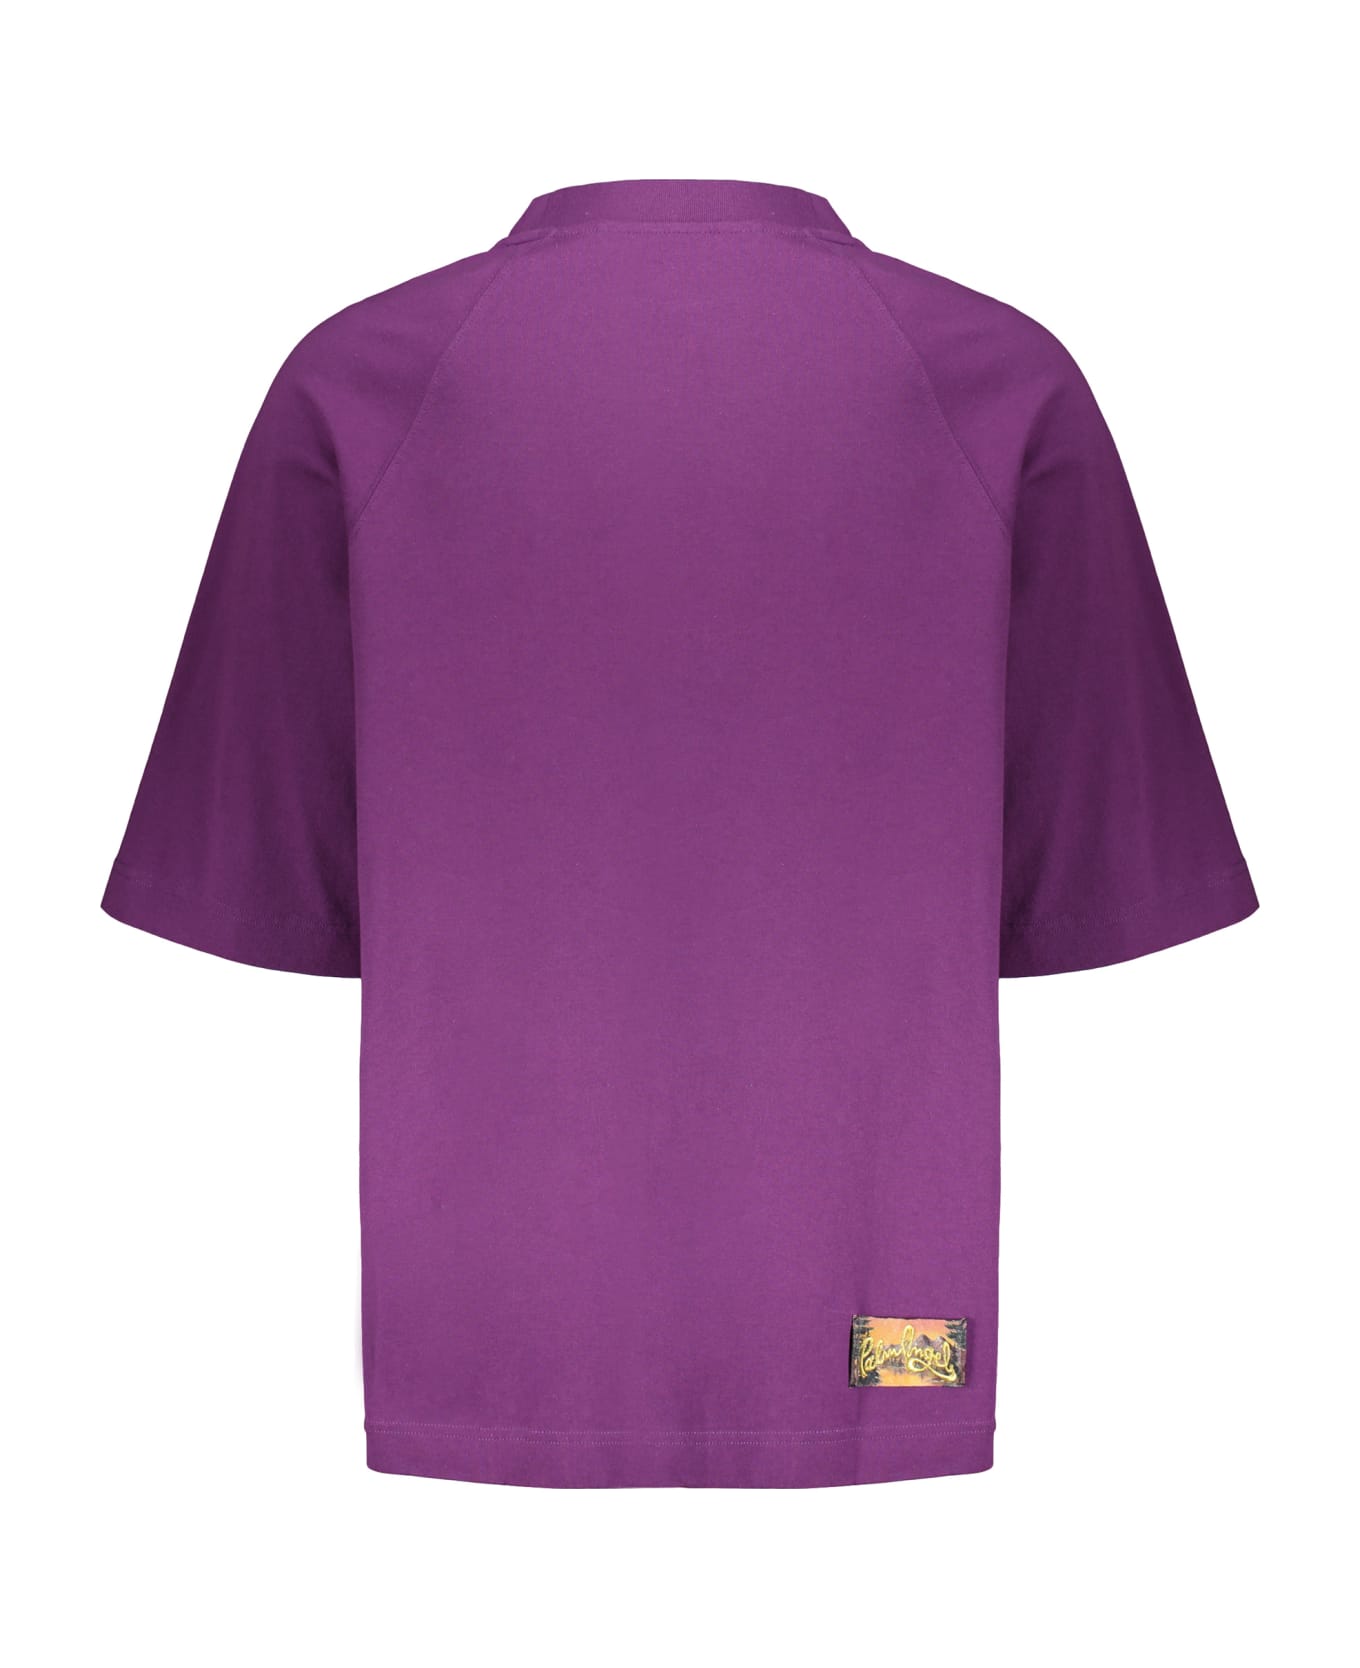 Palm Angels Cotton T-shirt - purple